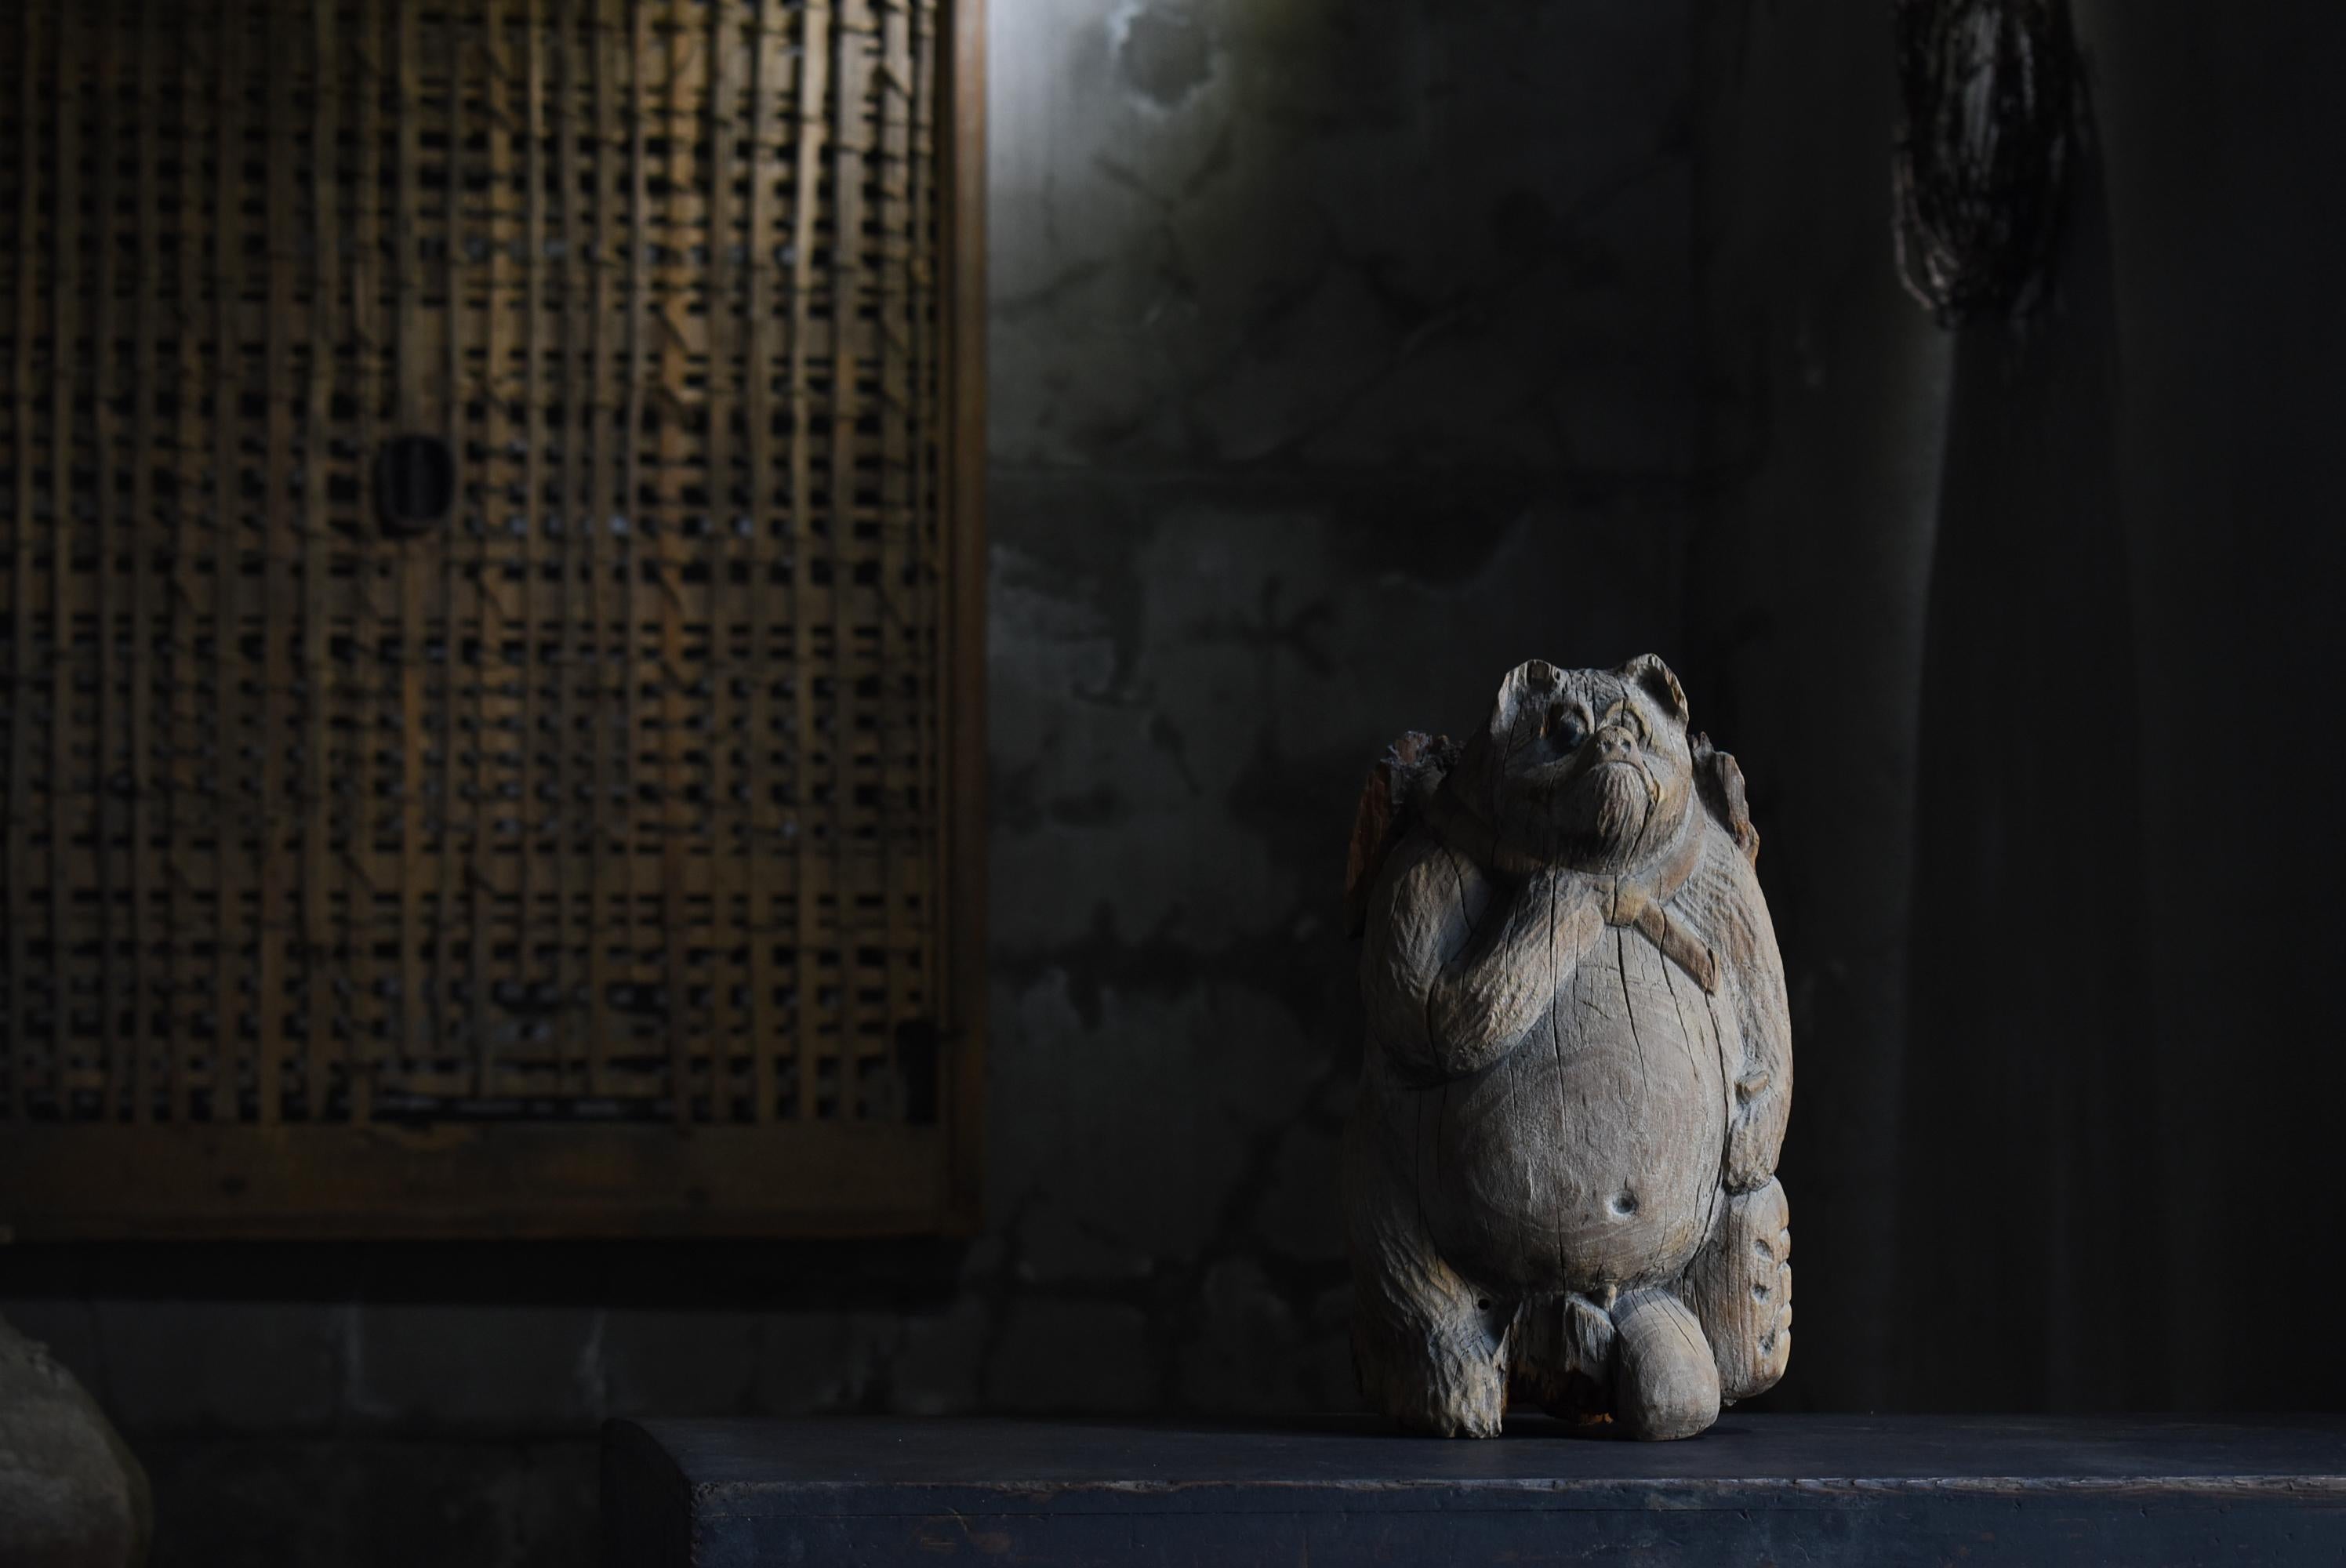 Dies ist eine sehr alte Waschbär Hund Holzschnitzerei in Japan gemacht.
Diese Holzschnitzerei wurde in der frühen Showa-Periode (1900er bis 1940er Jahre) hergestellt.
Er ist aus einem einzigen Stück Zedernholz geschnitzt.

In Japan ist es üblich,